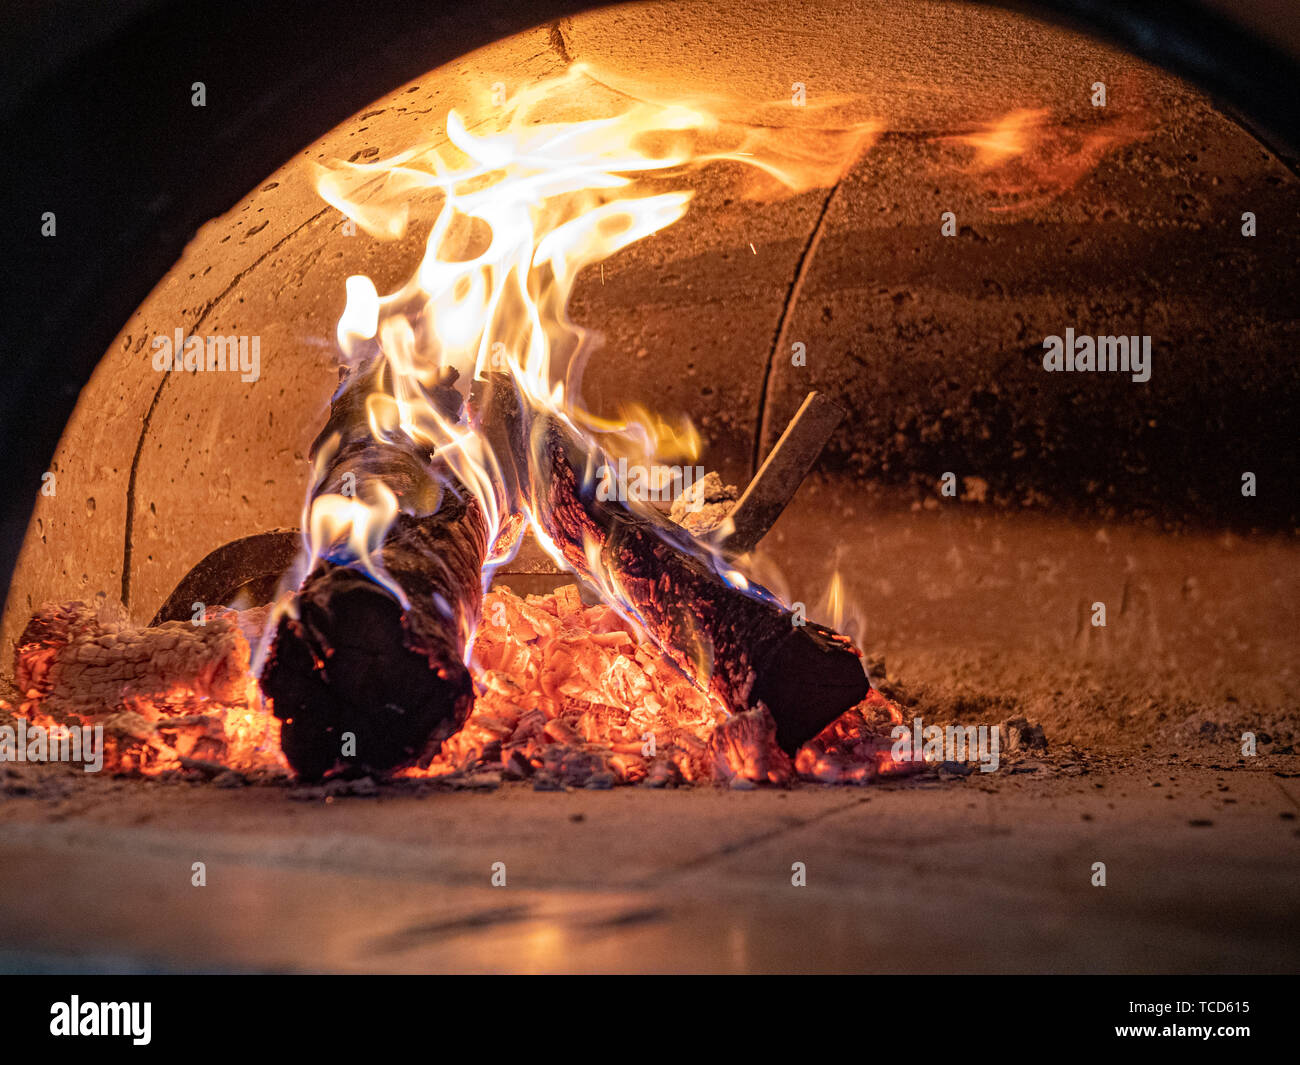 Le fiamme, registri, ceneri, braci dentro la combustione del legno forno a pizza Foto Stock